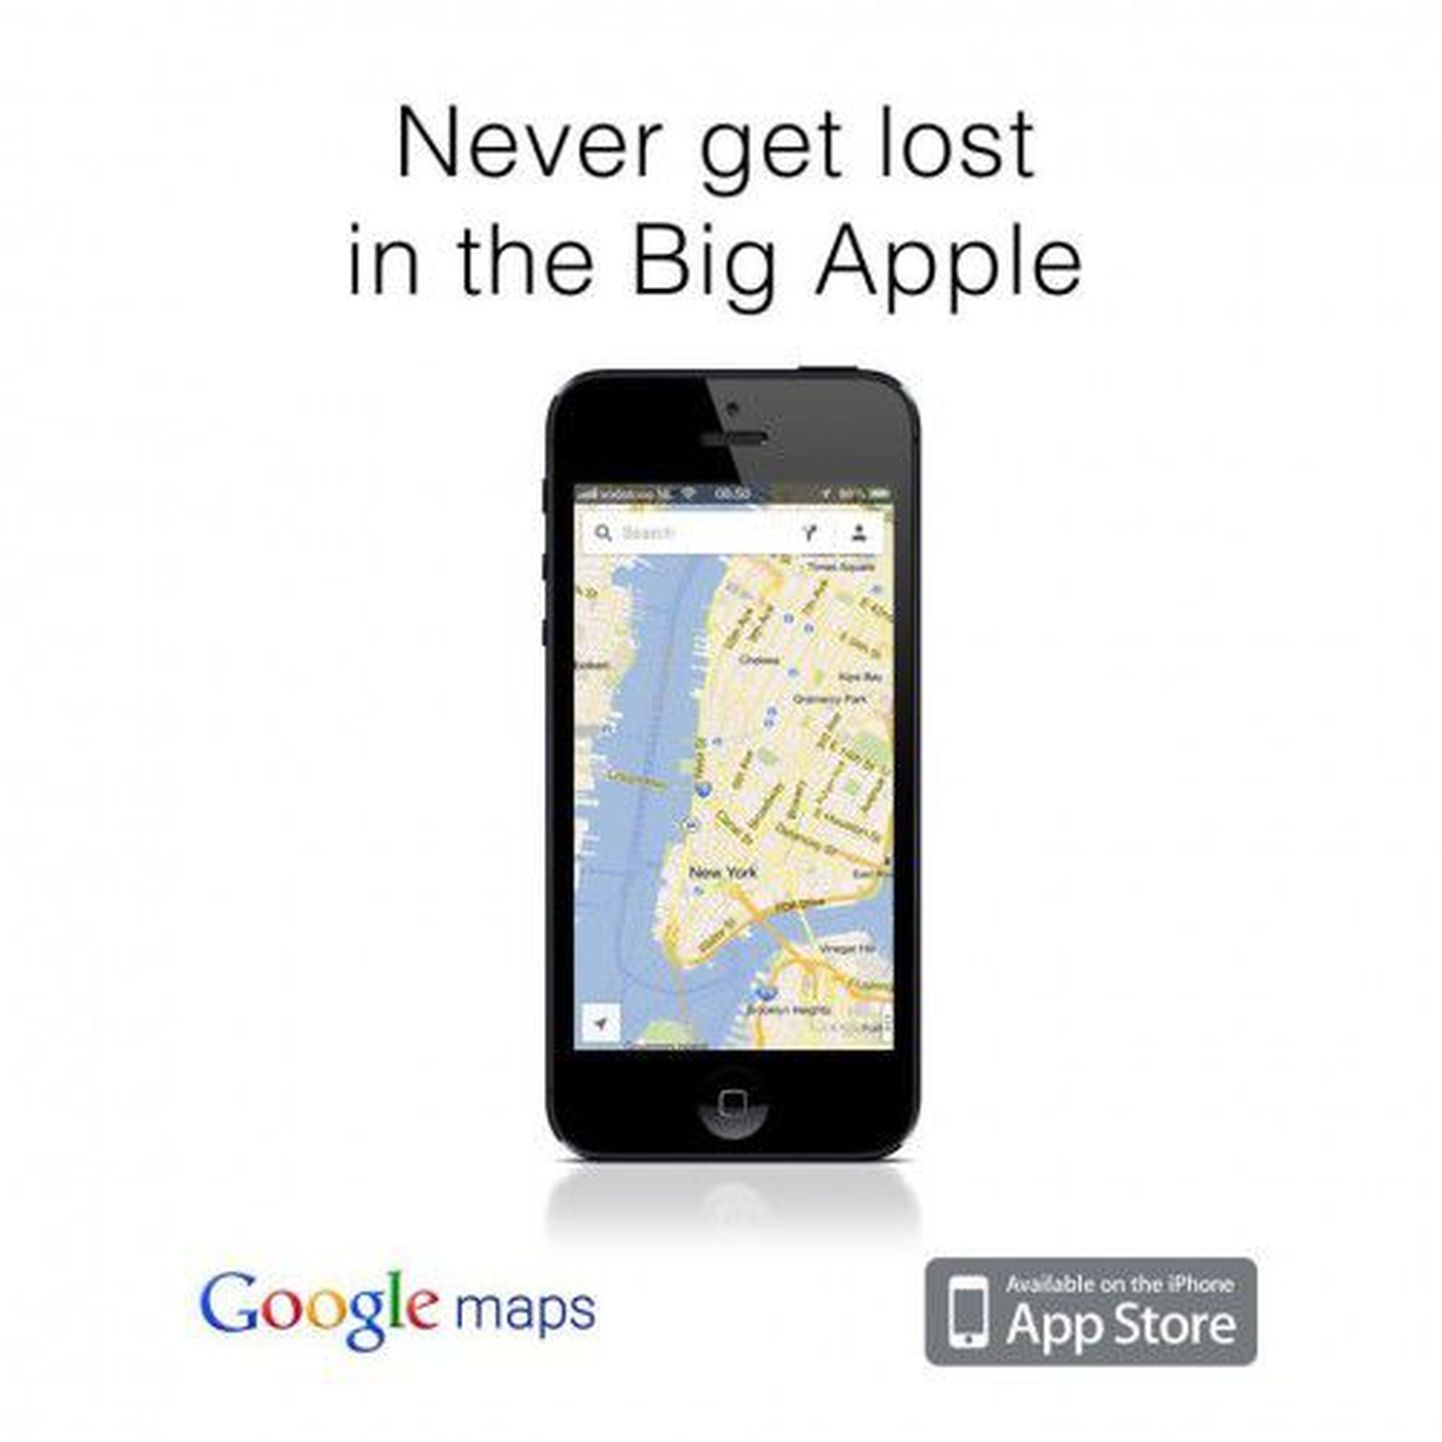 Google'i kaardirakenduse reklaam